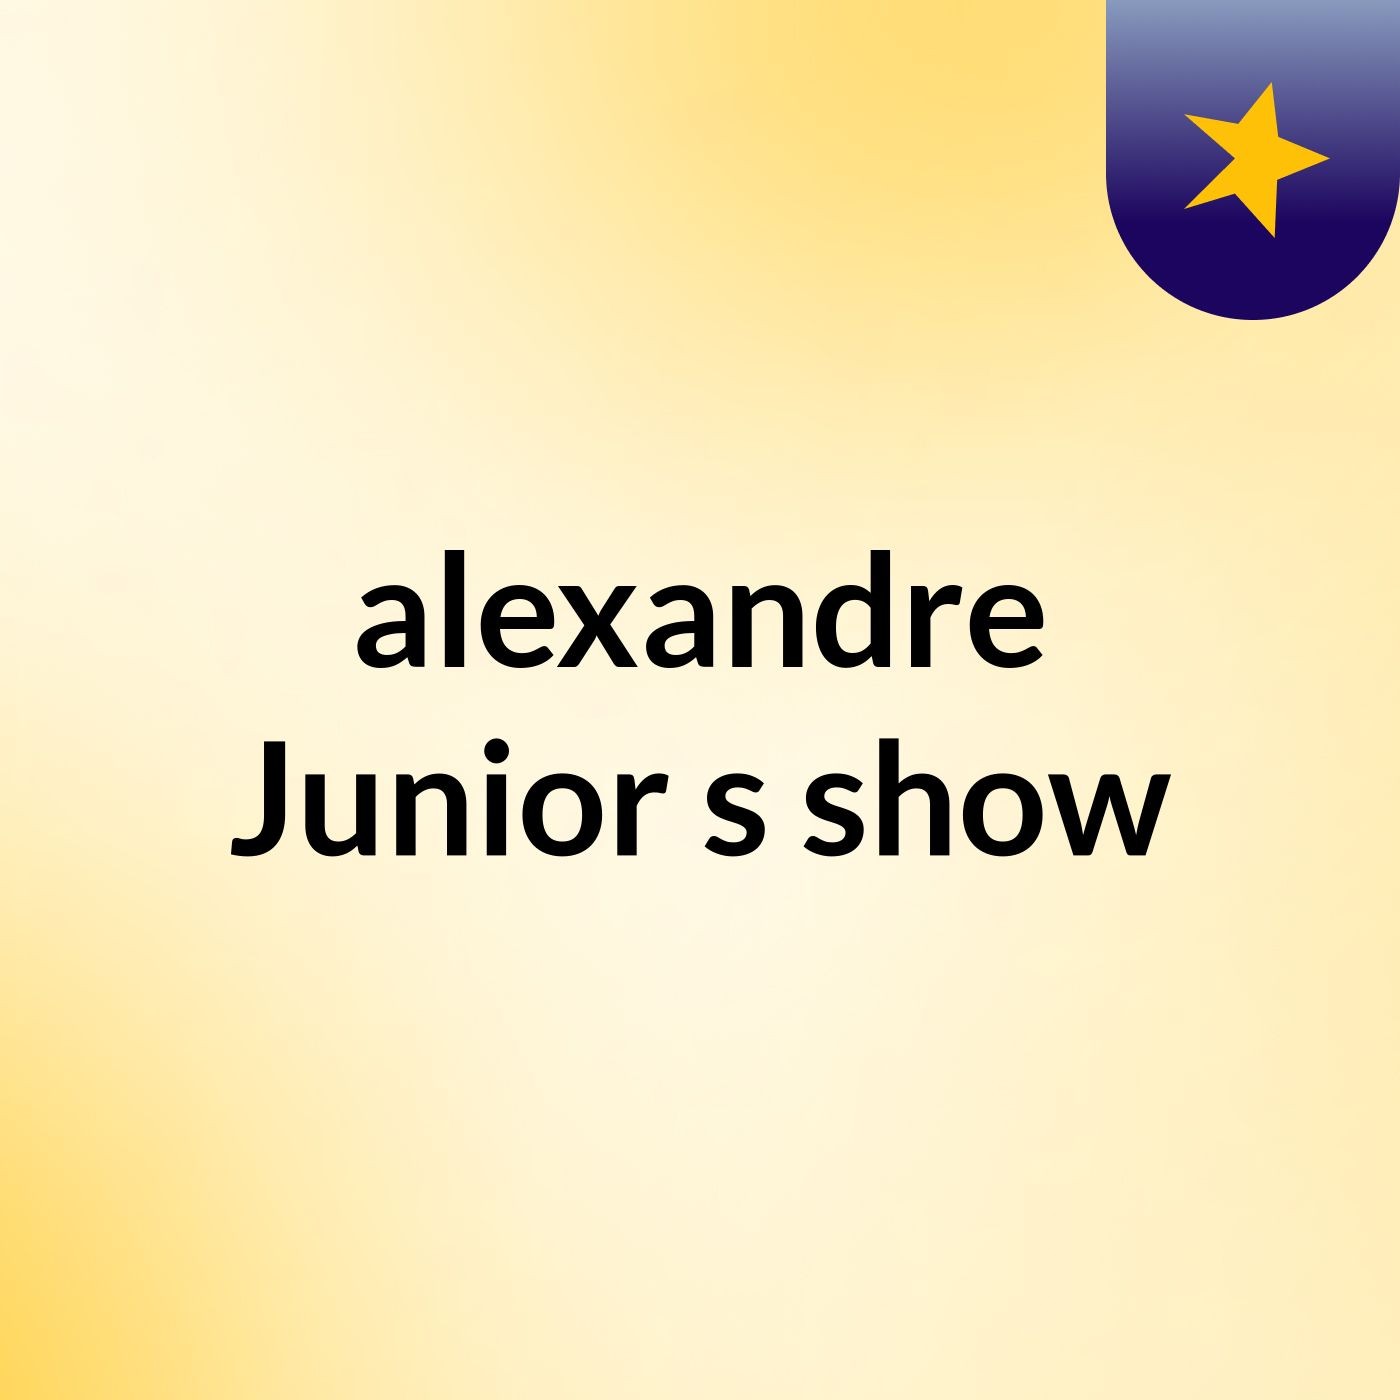 Episódio 7 - alexandre Junior's show